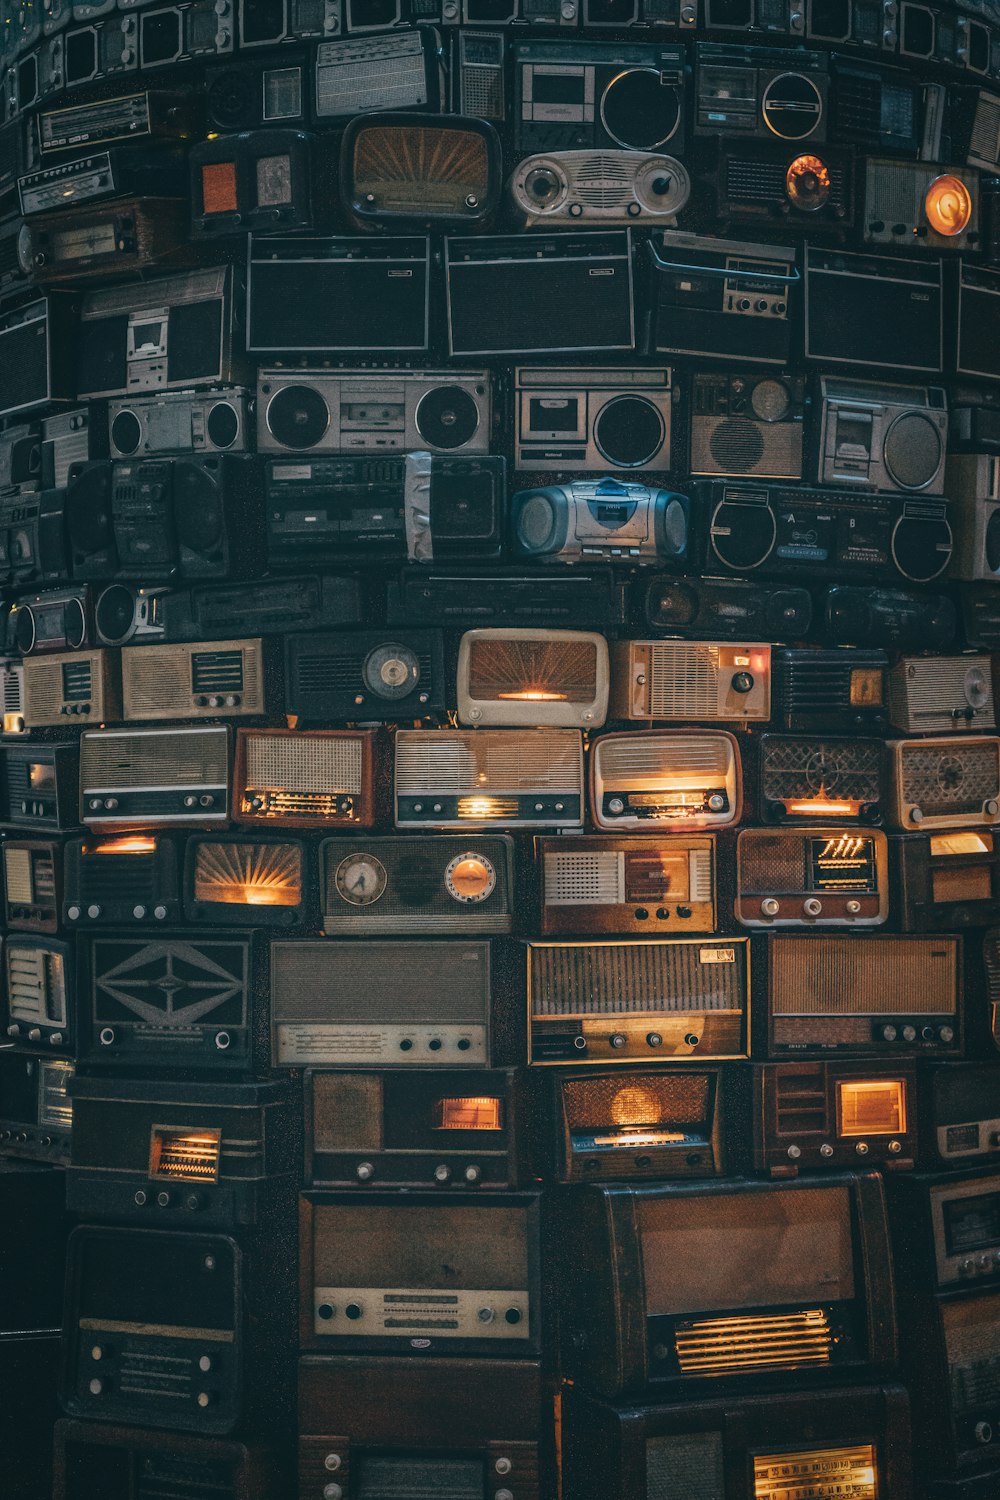 많은 양의 오래된 라디오가 서로 겹쳐져 있습니다.